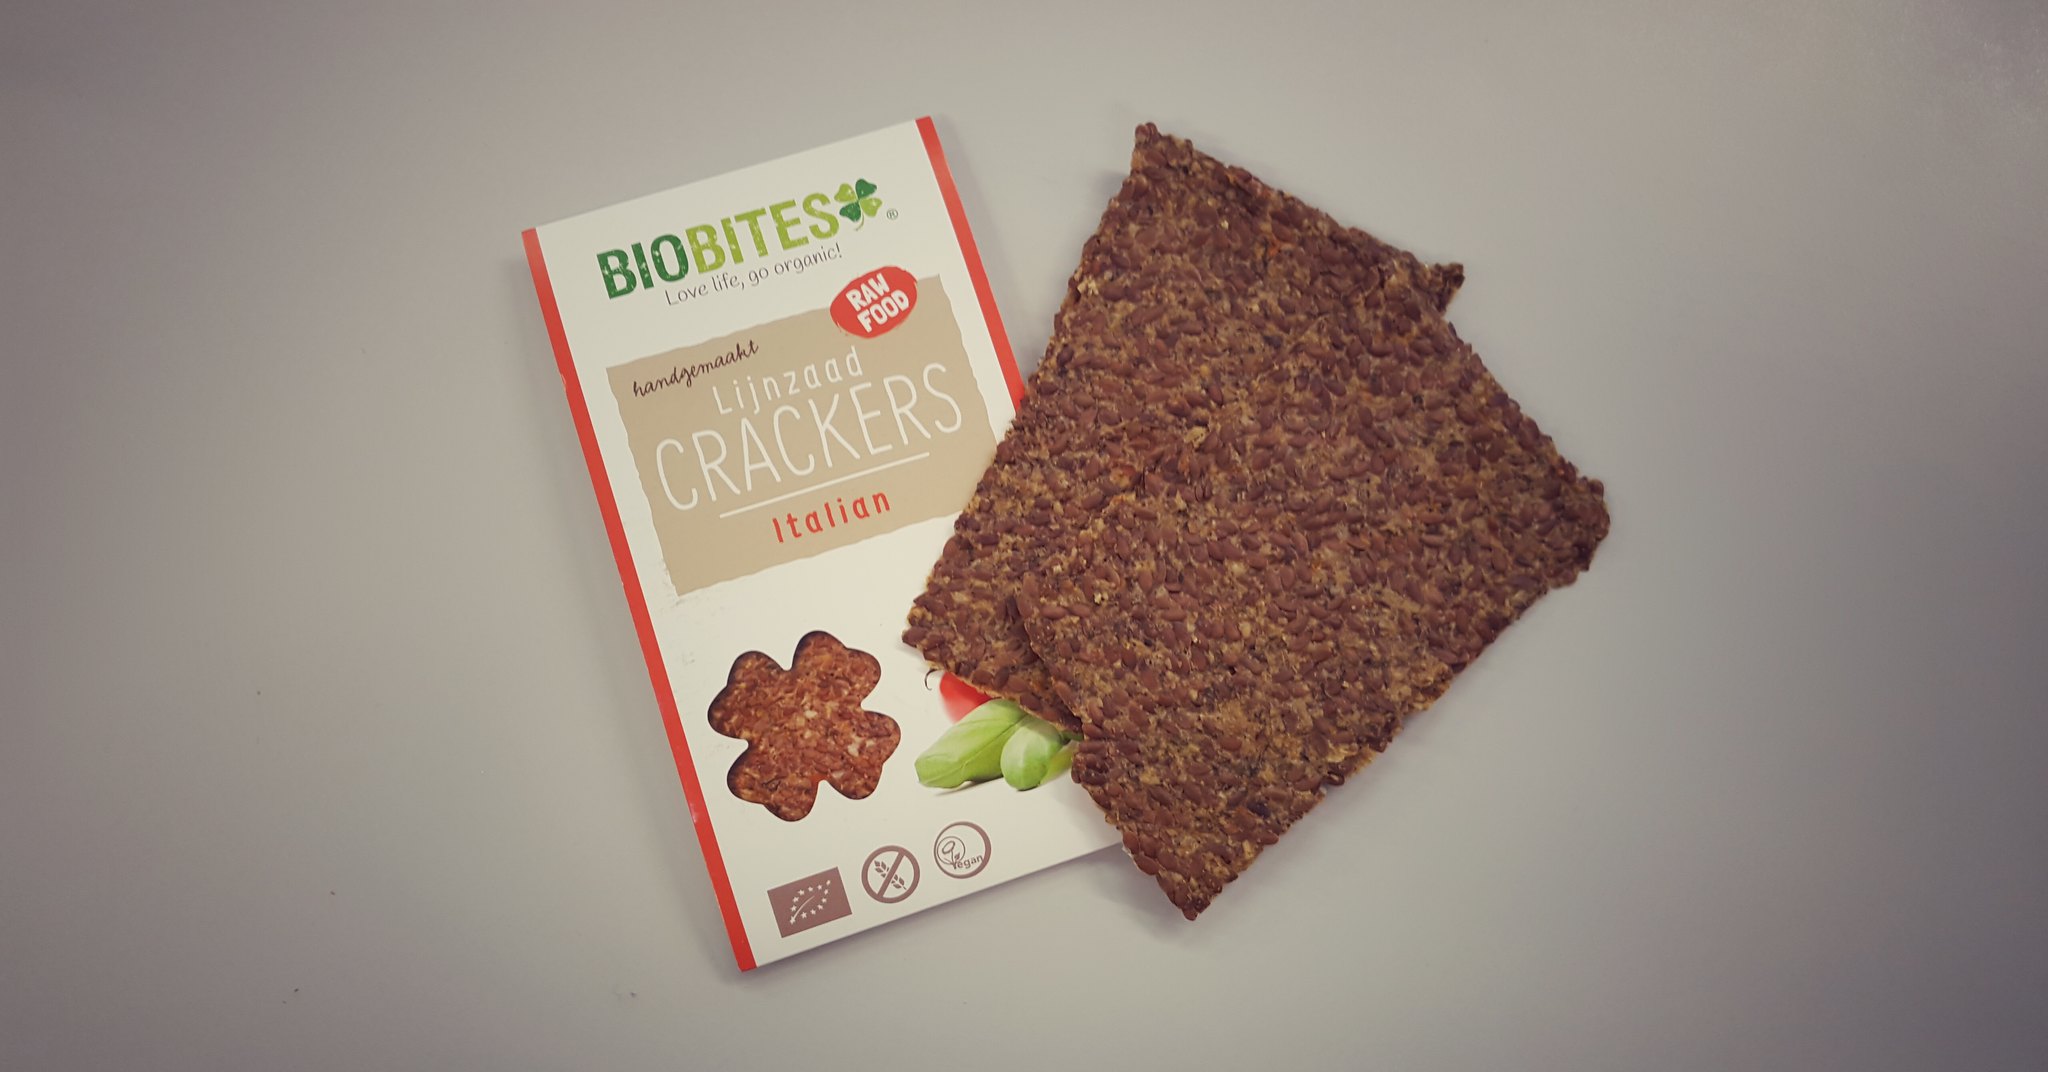 Biobites lijnzaad crackers